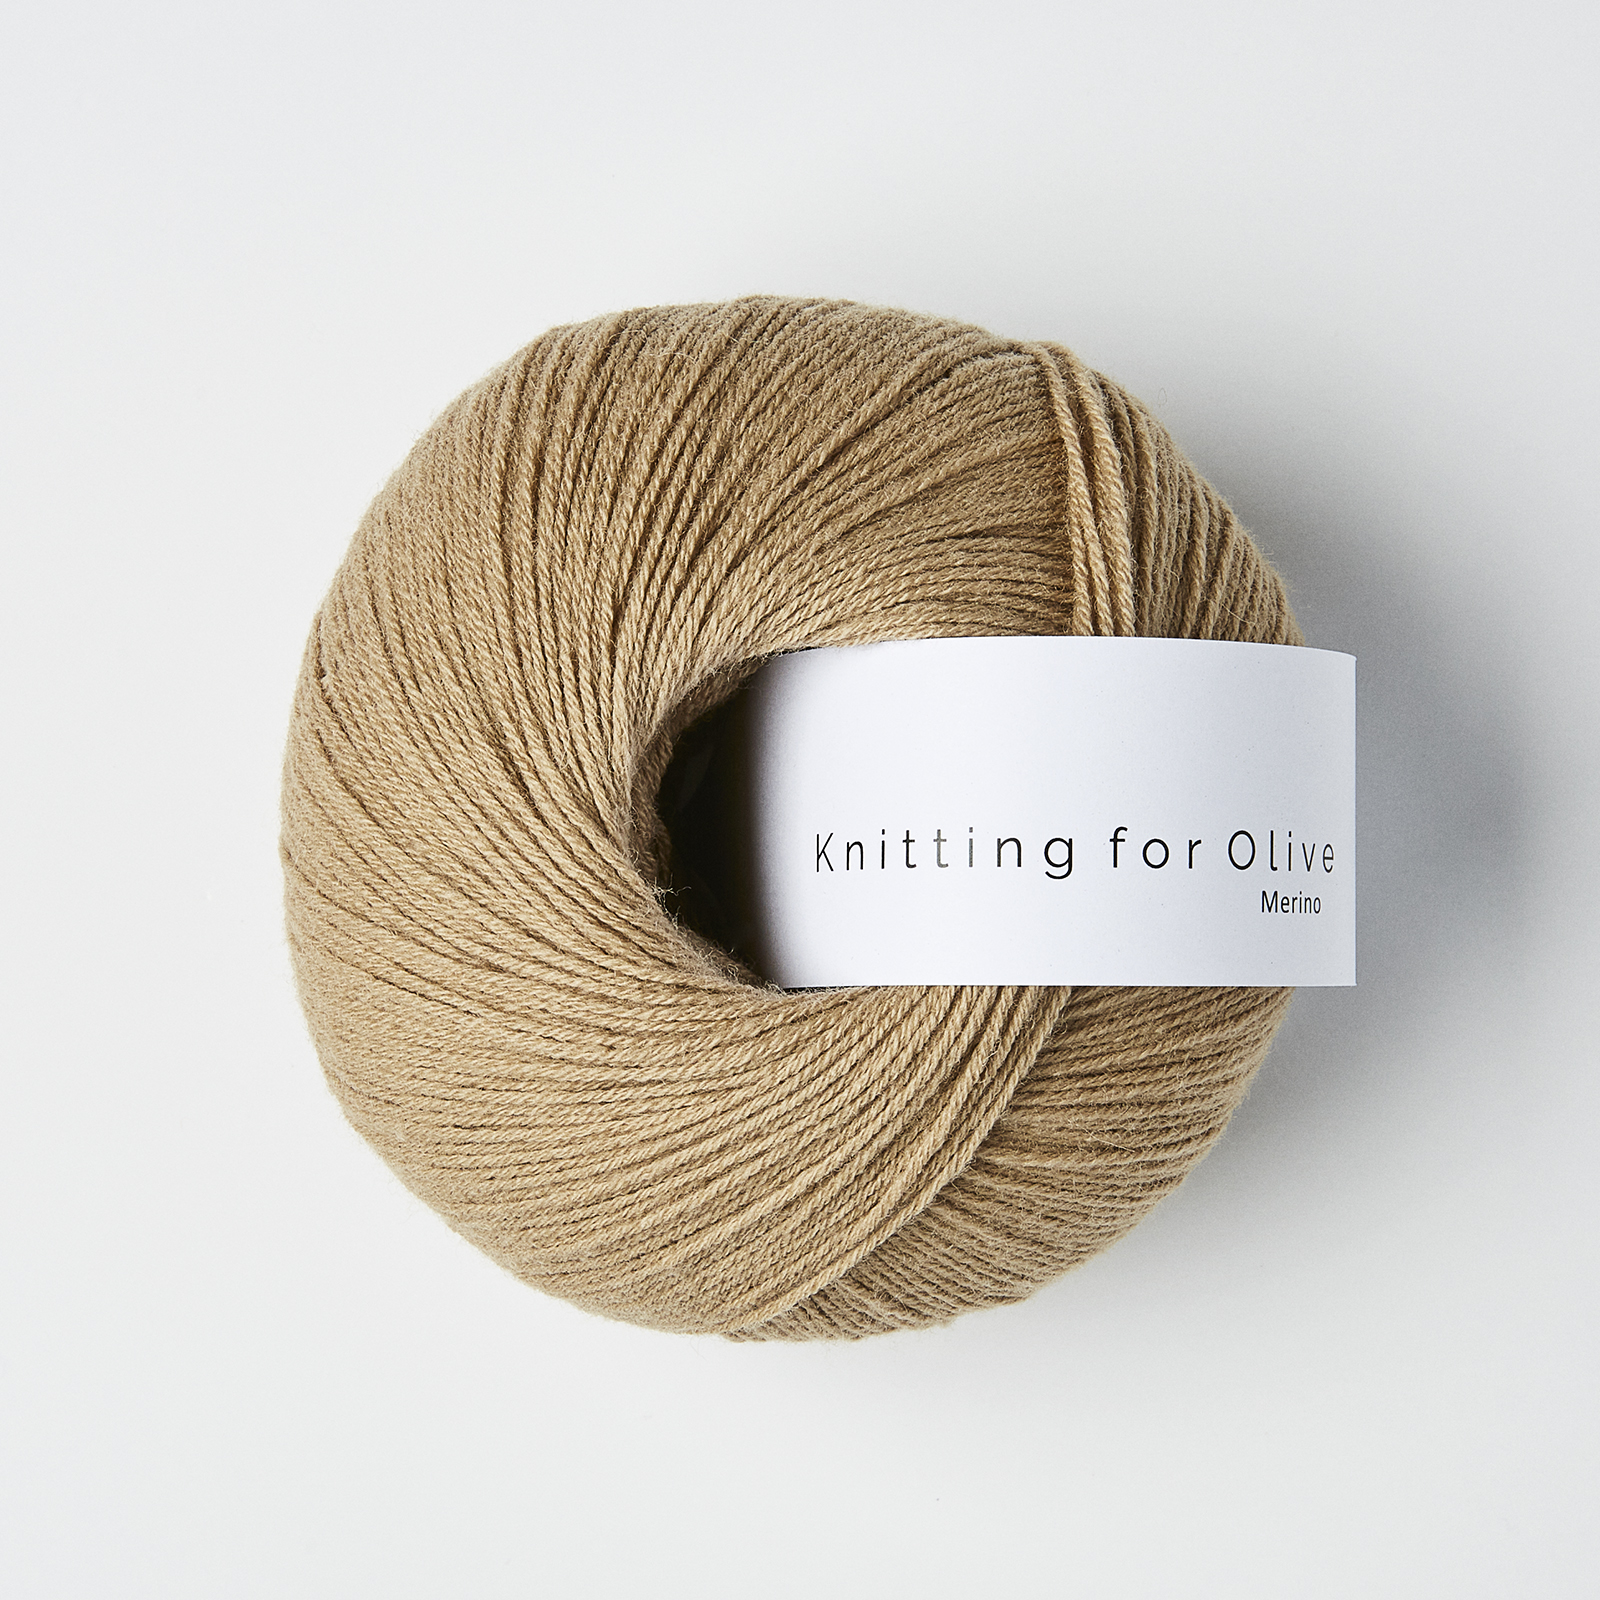 Merino (Knitting for Olive): trenchcoat